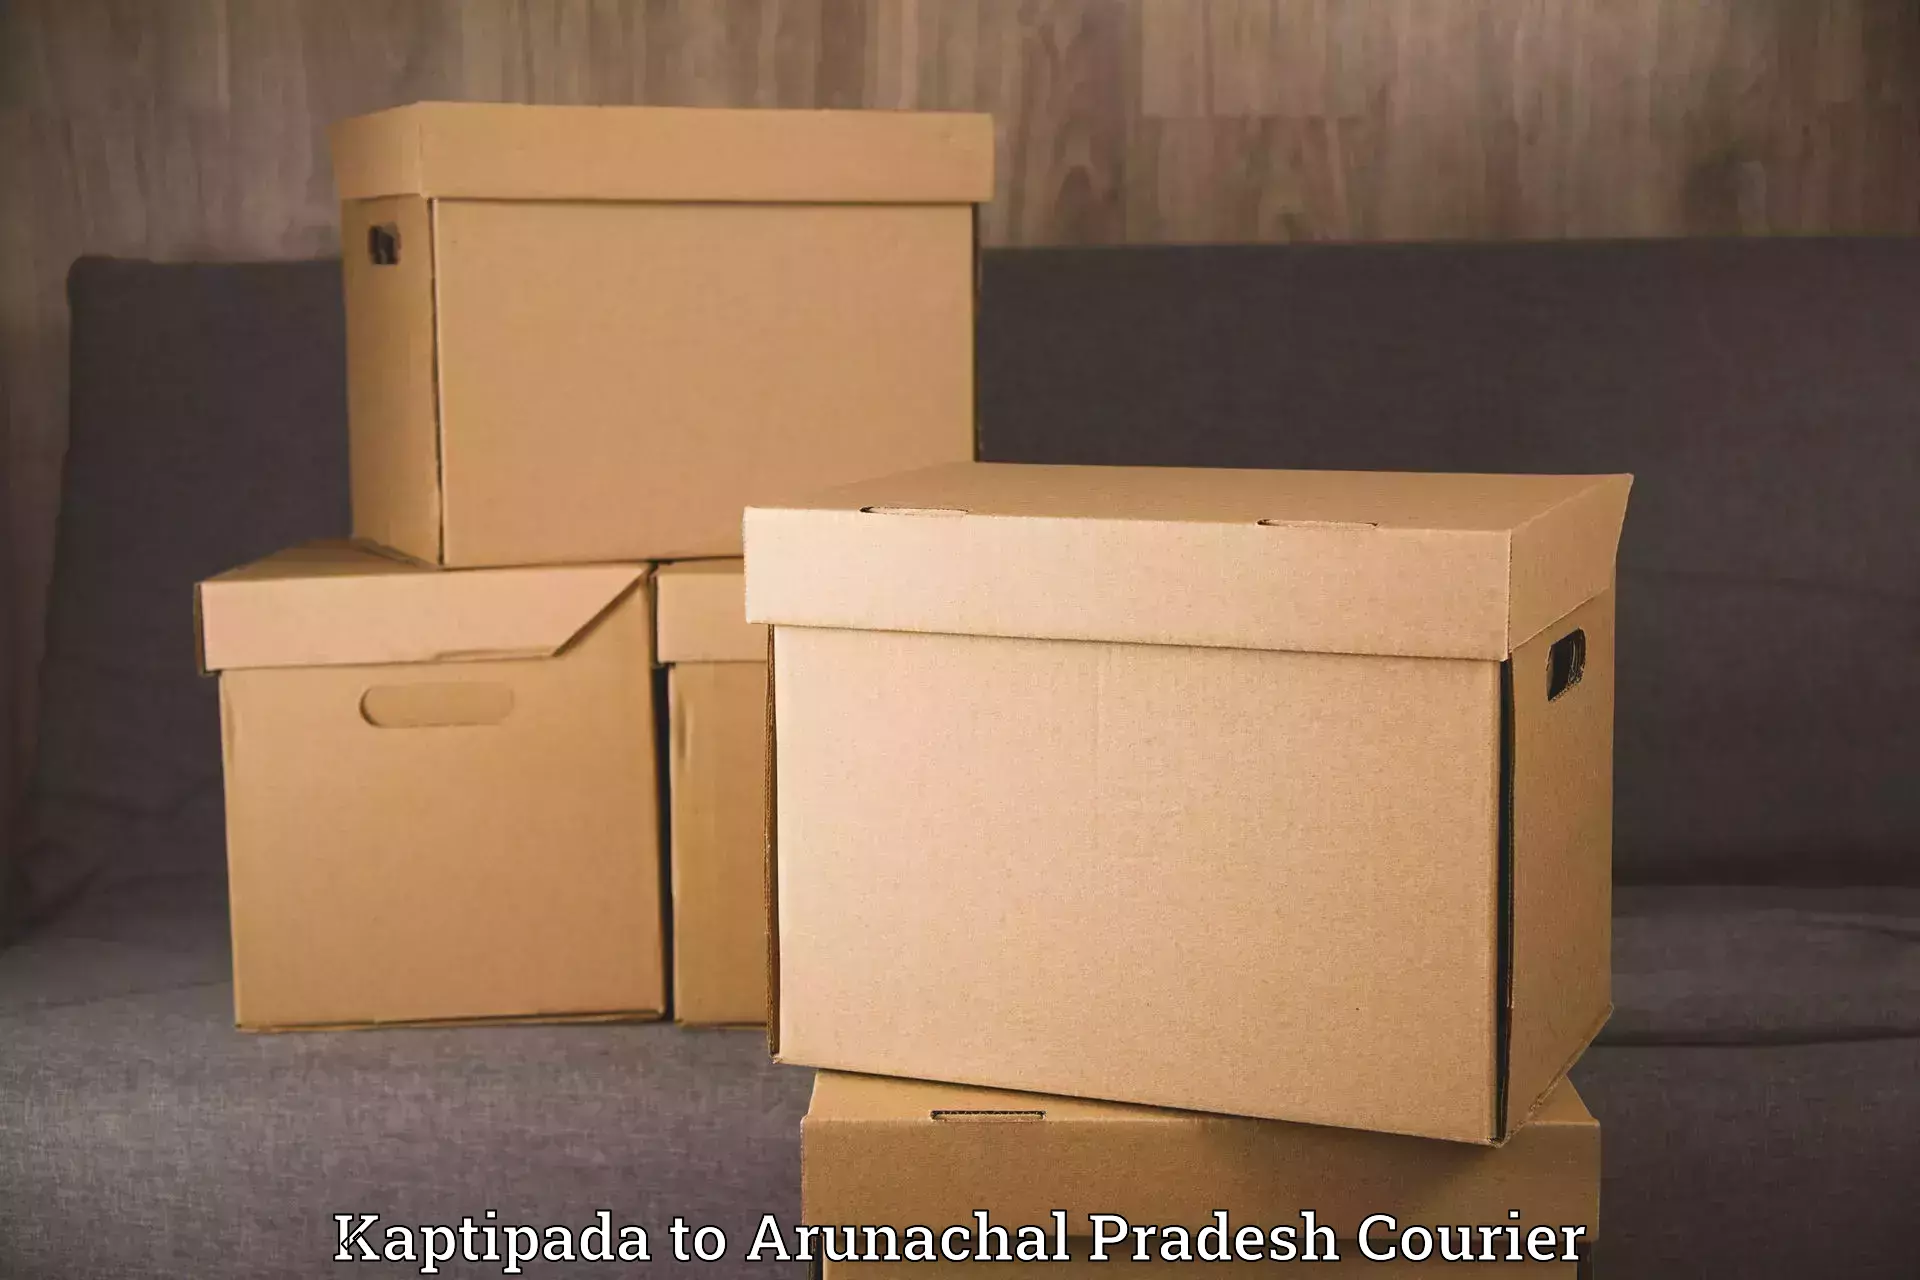 Professional packing services Kaptipada to Arunachal Pradesh